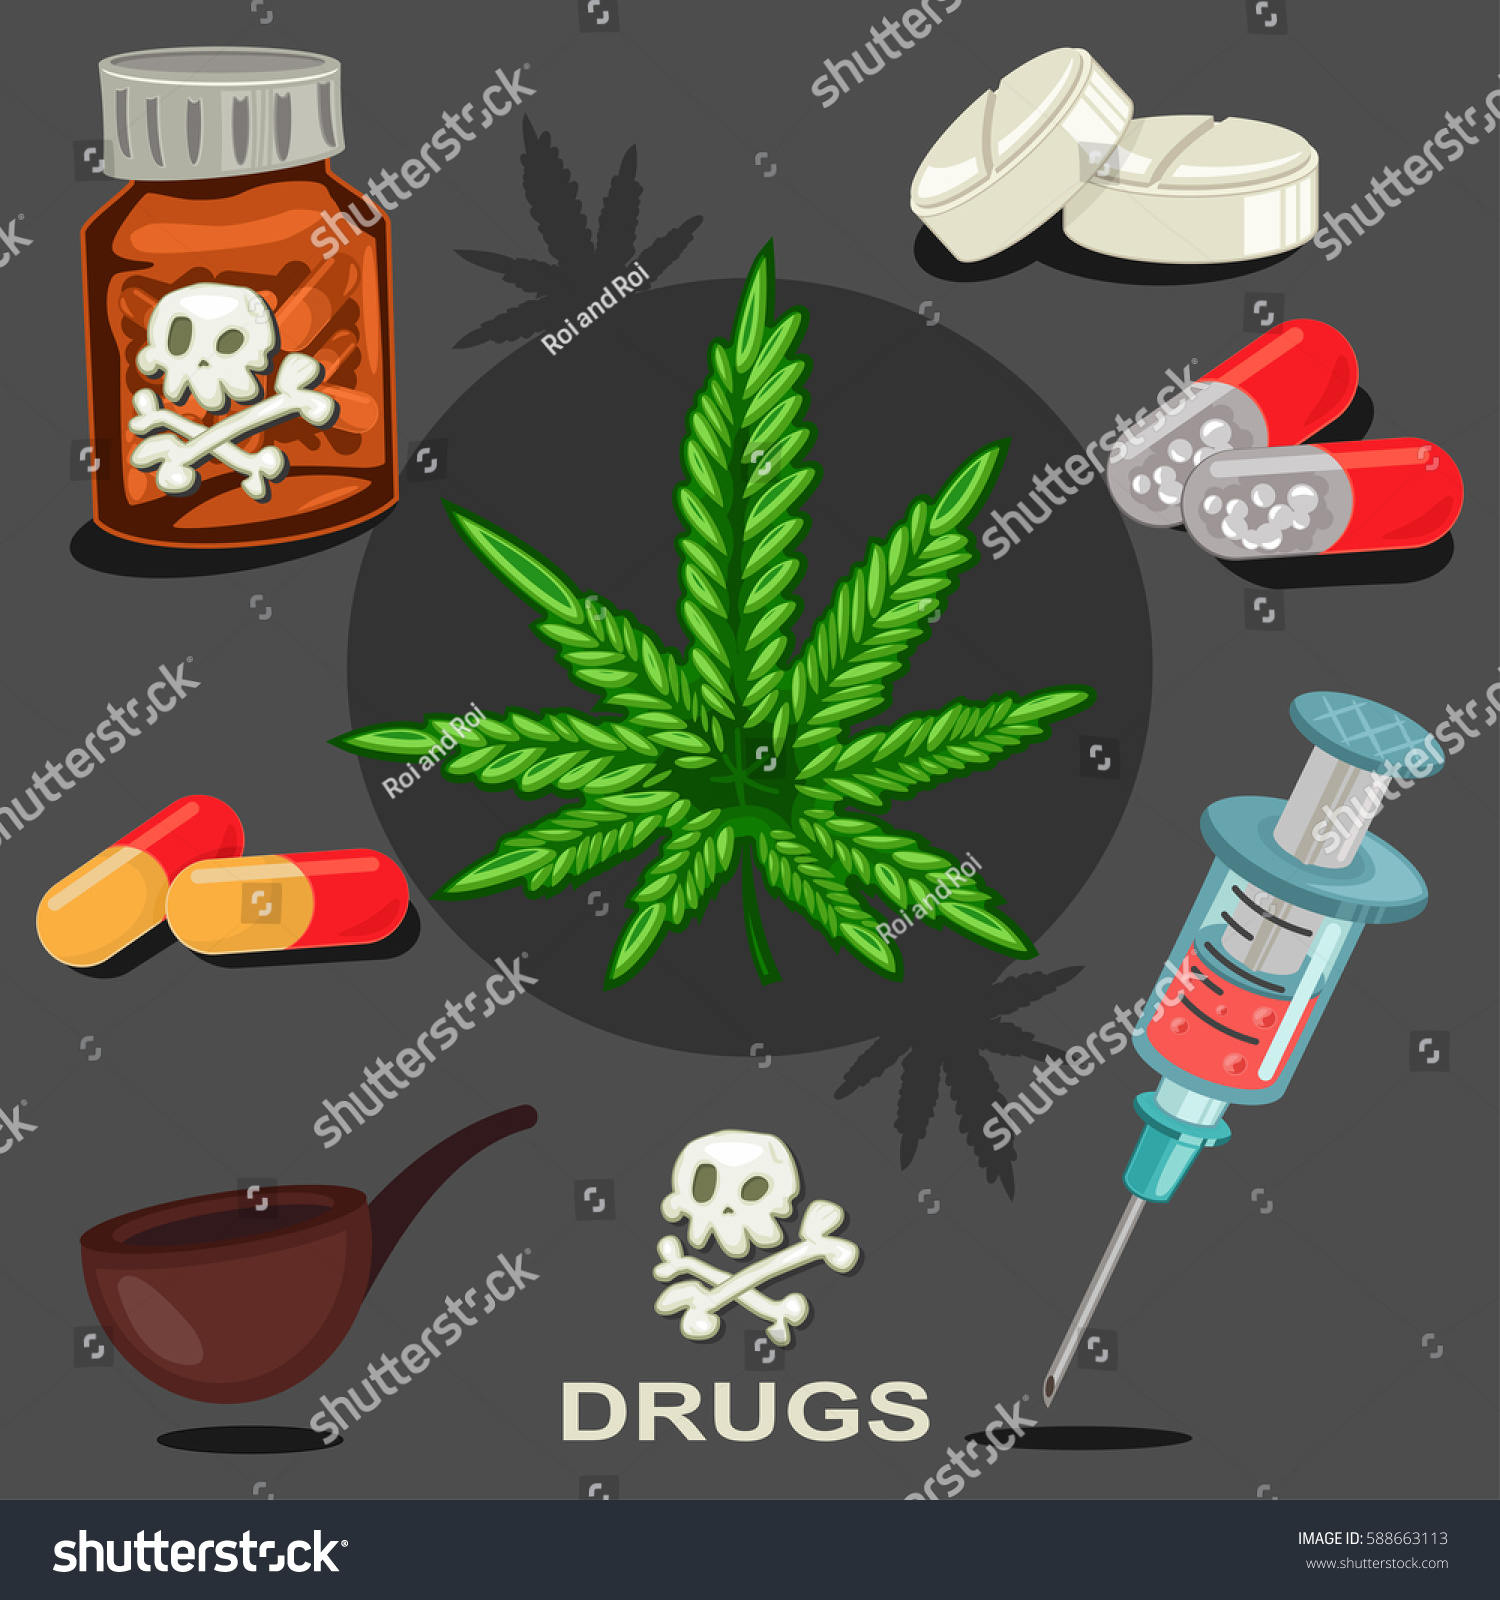 ドラッグのベクター画像アイコンセット 違法な麻薬 マリファナの葉 ヘロイン入りの注射器 丸薬 喫煙管 のベクター画像素材 ロイヤリティフリー